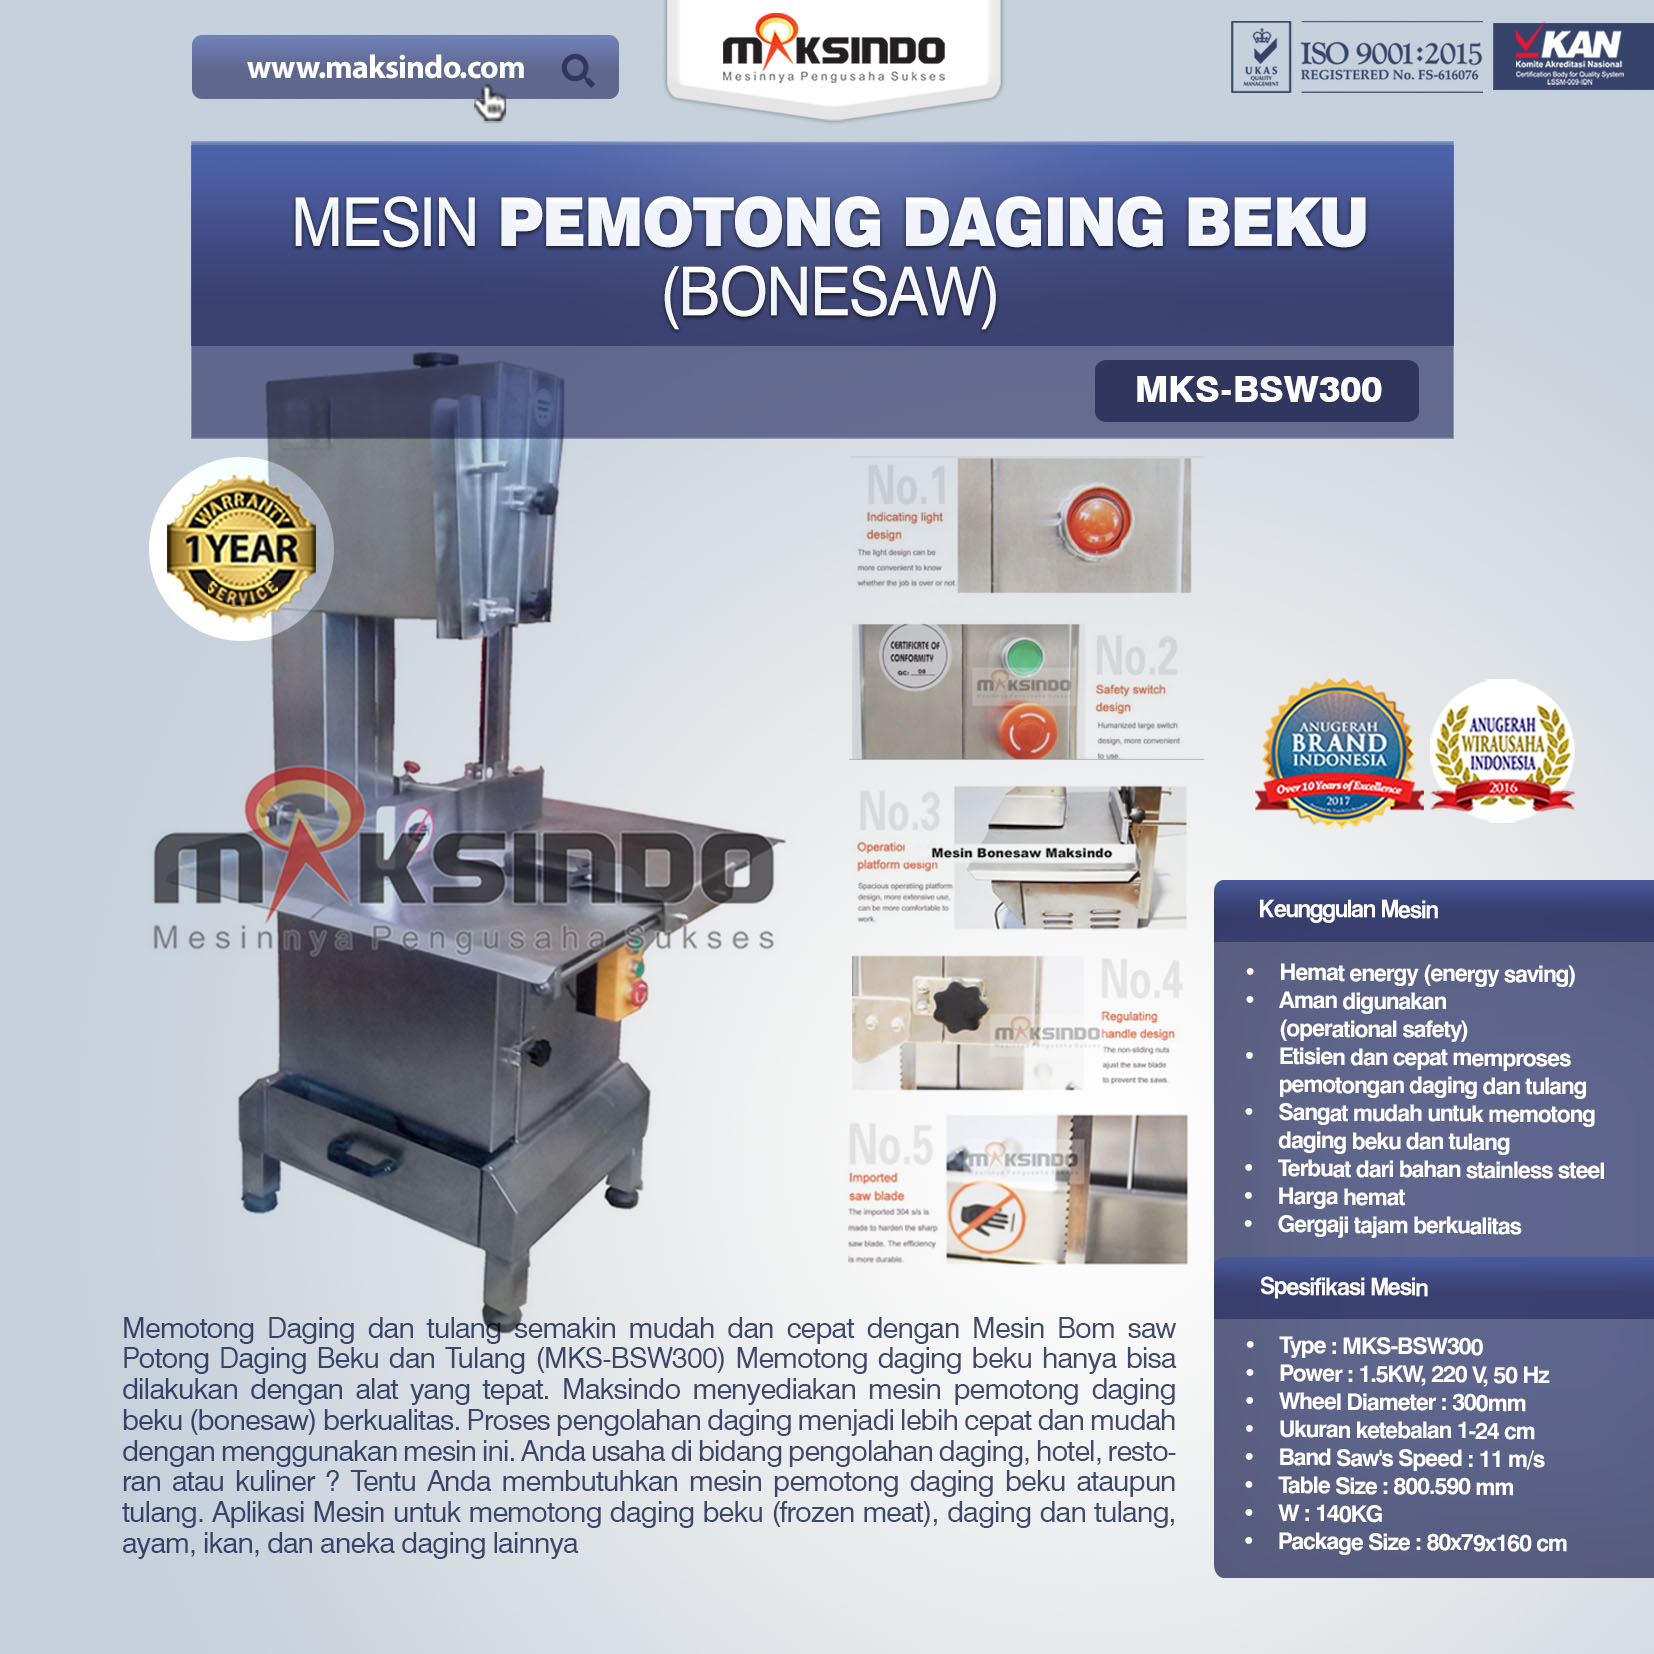 Mesin Mesin Bonesaw Potong Daging Beku dan Tulang (MKS-BSW300) (pusat mesin)